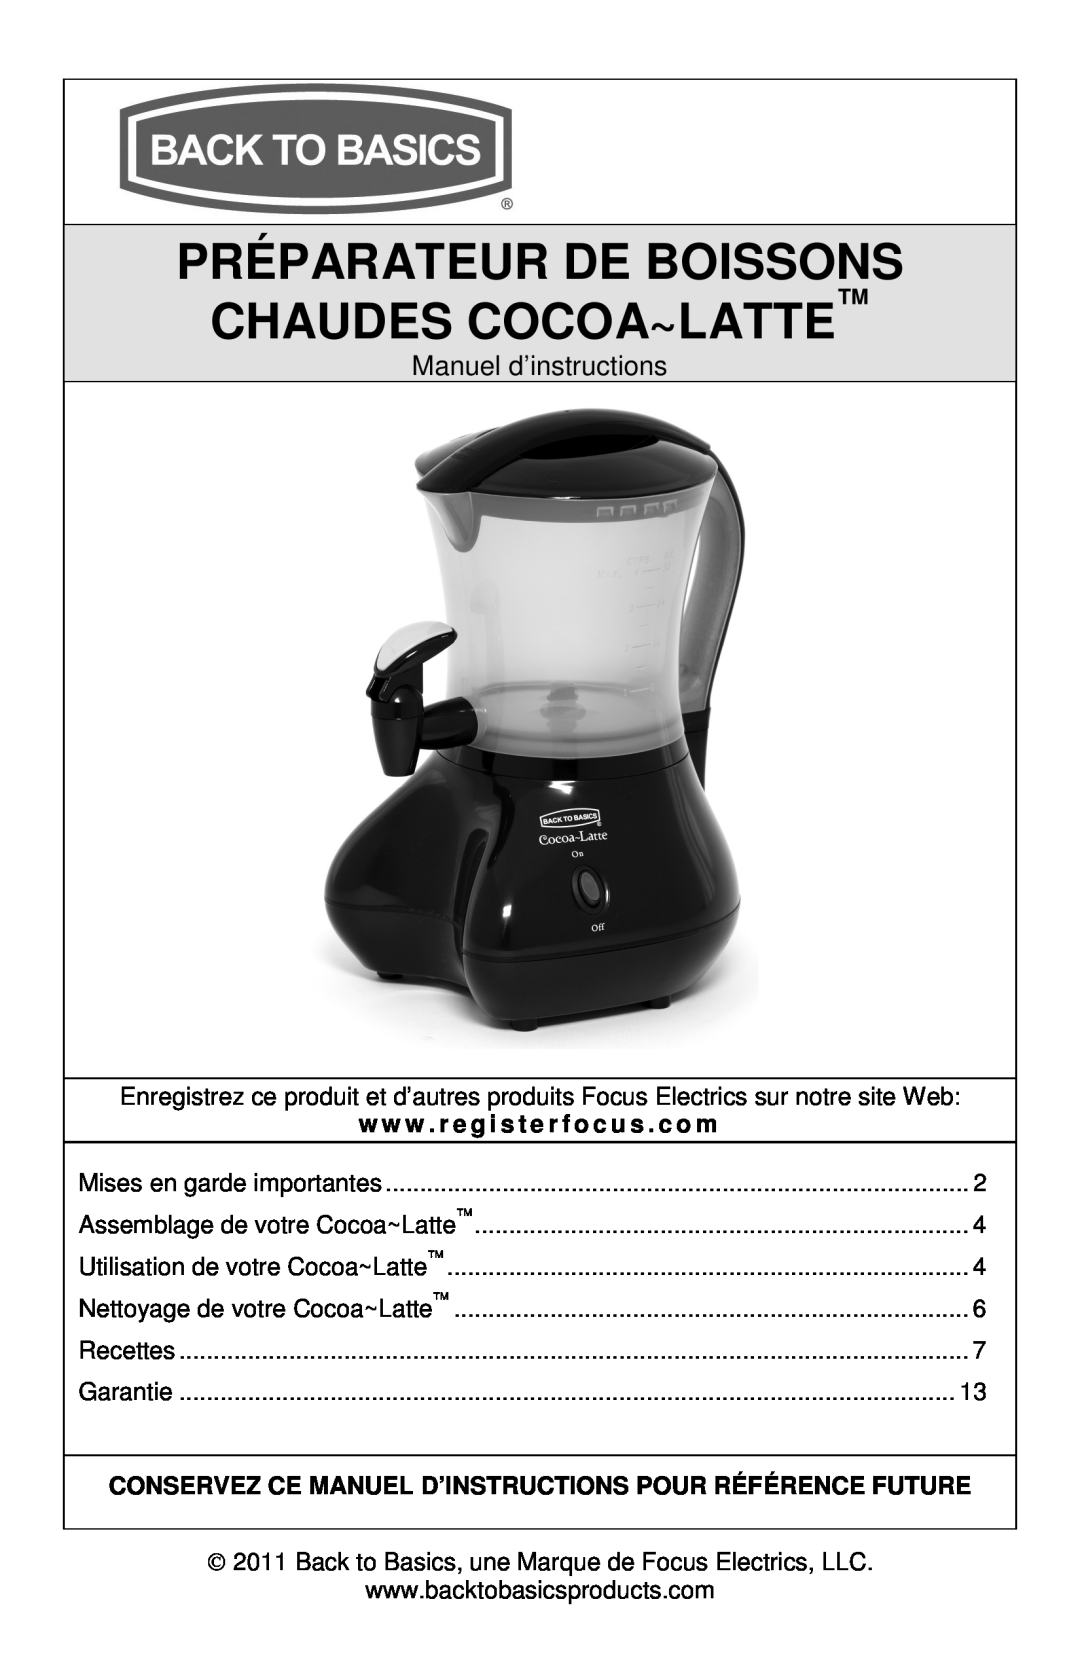 West Bend Back to Basics instruction manual Préparateur De Boissons Chaudes Cocoa~Latte, Manuel d’instructions 